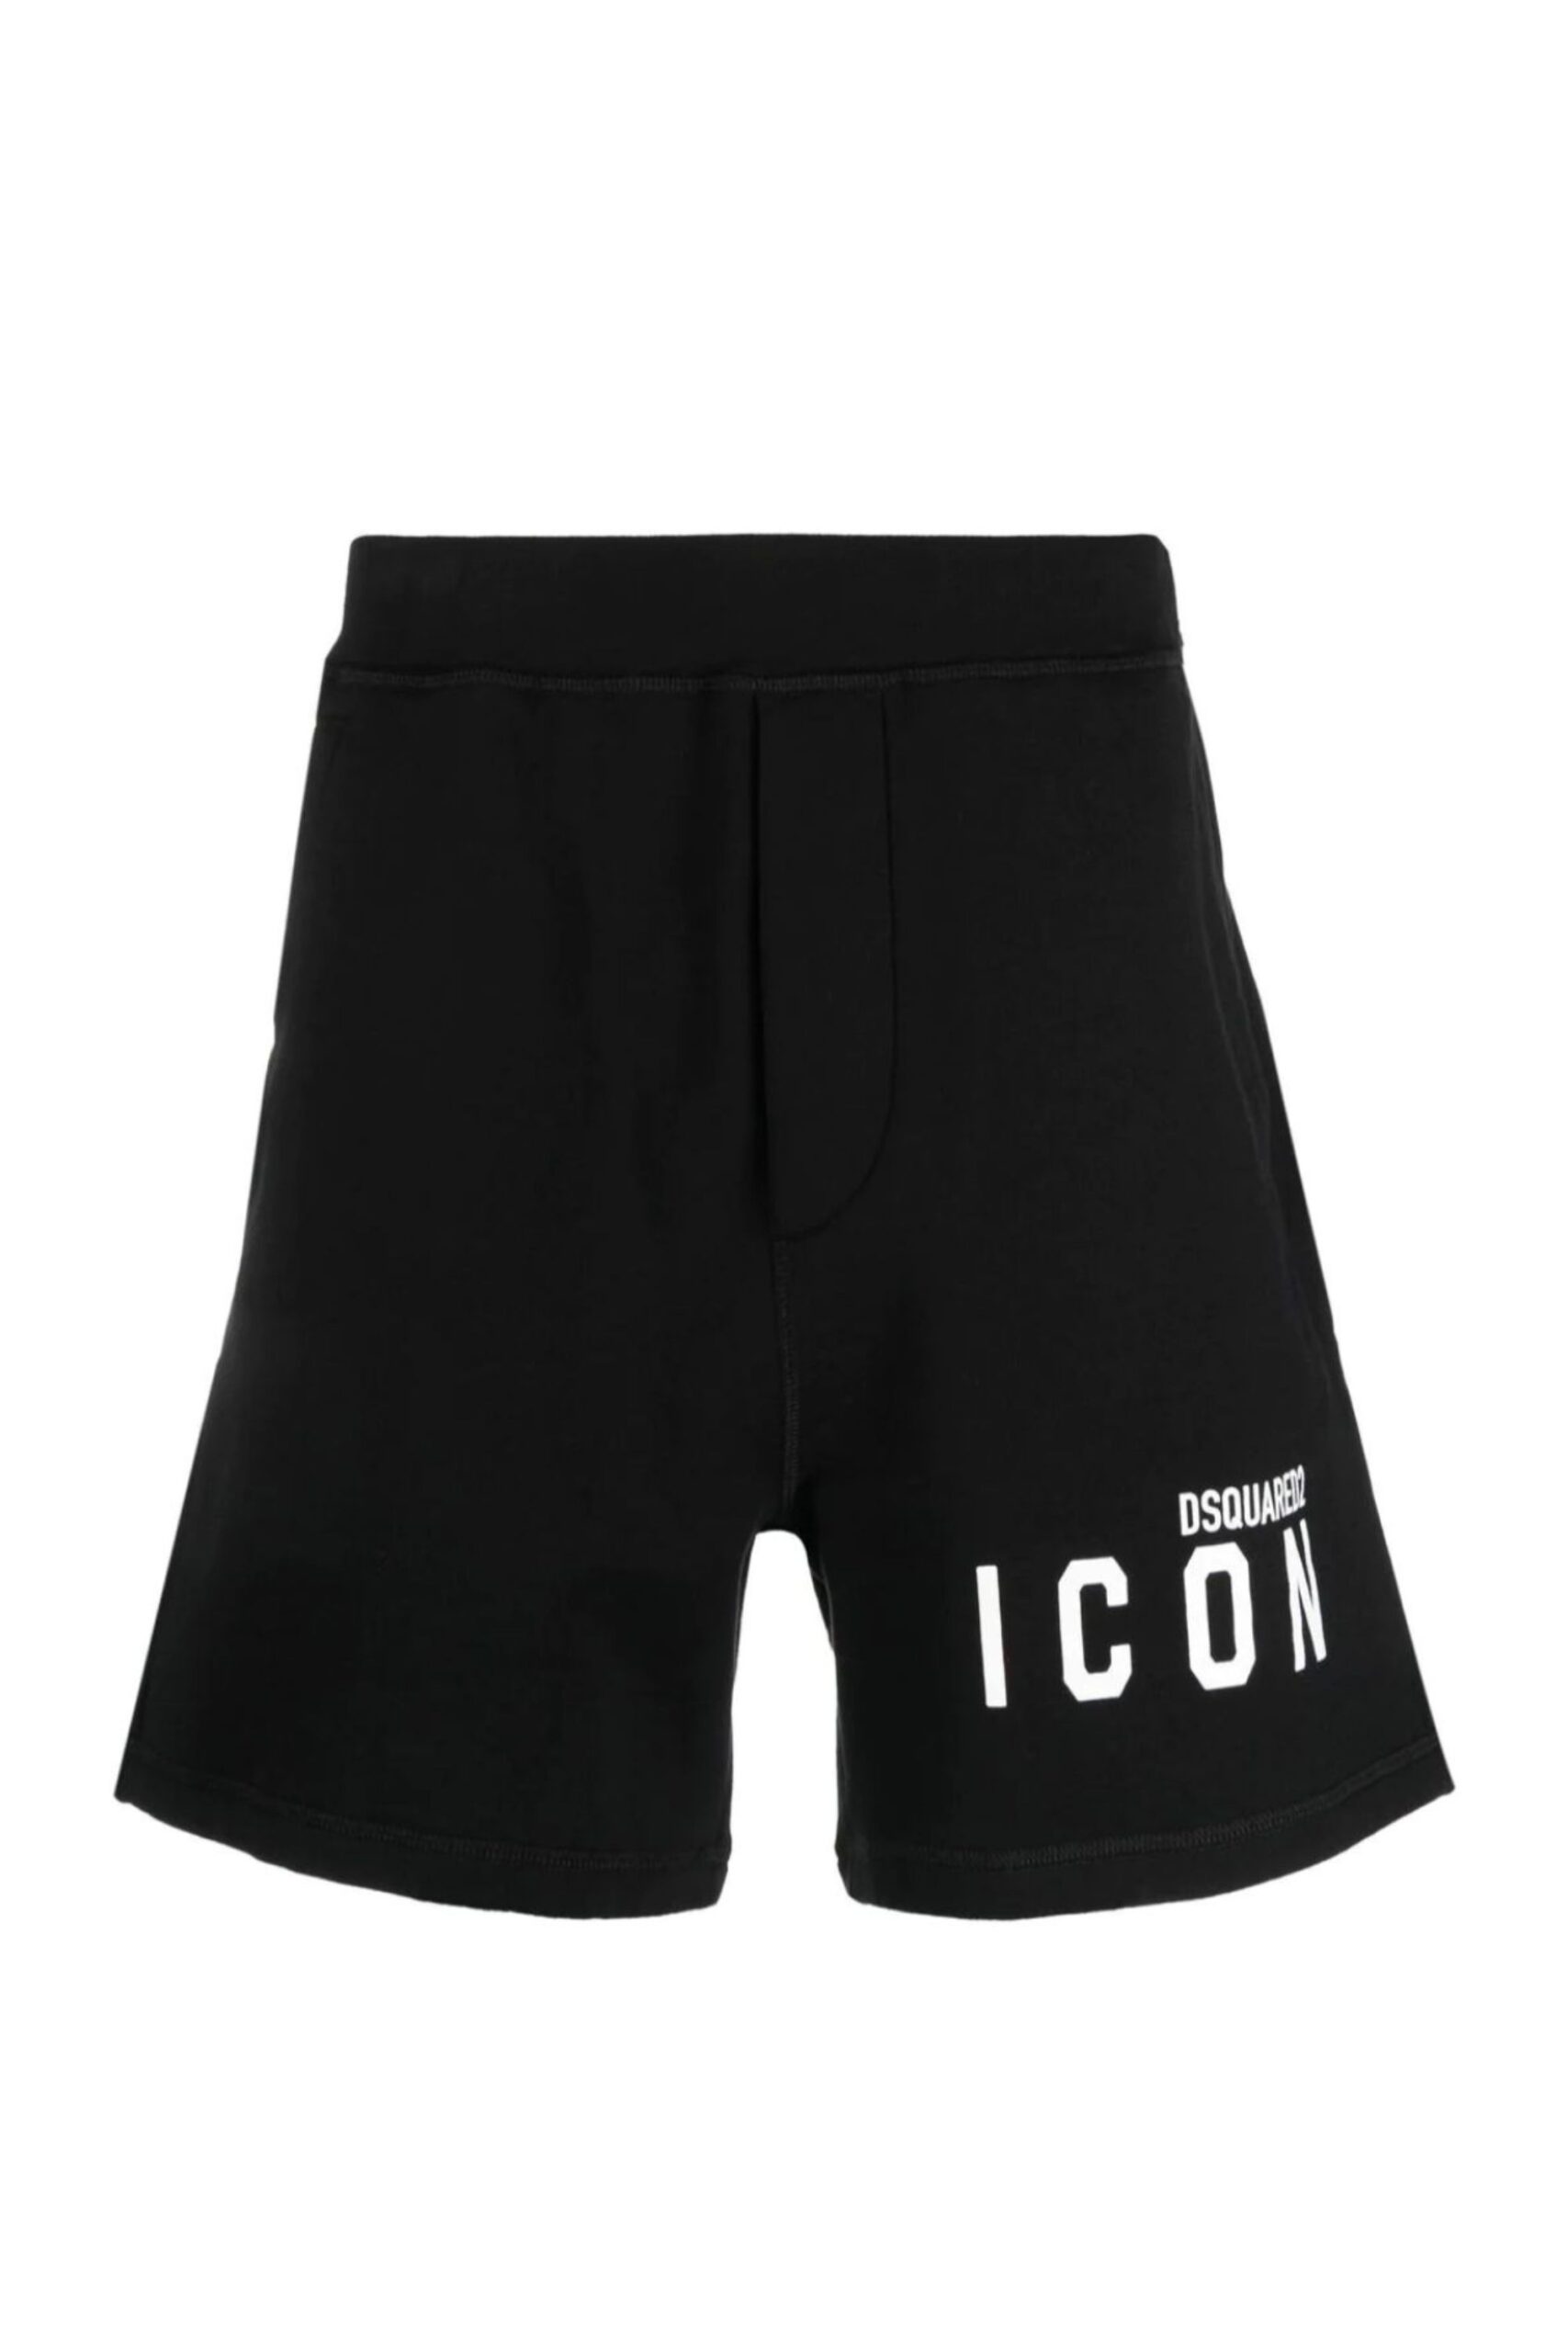 Dsquared2 Shorts Con Logo ICON vista frontale